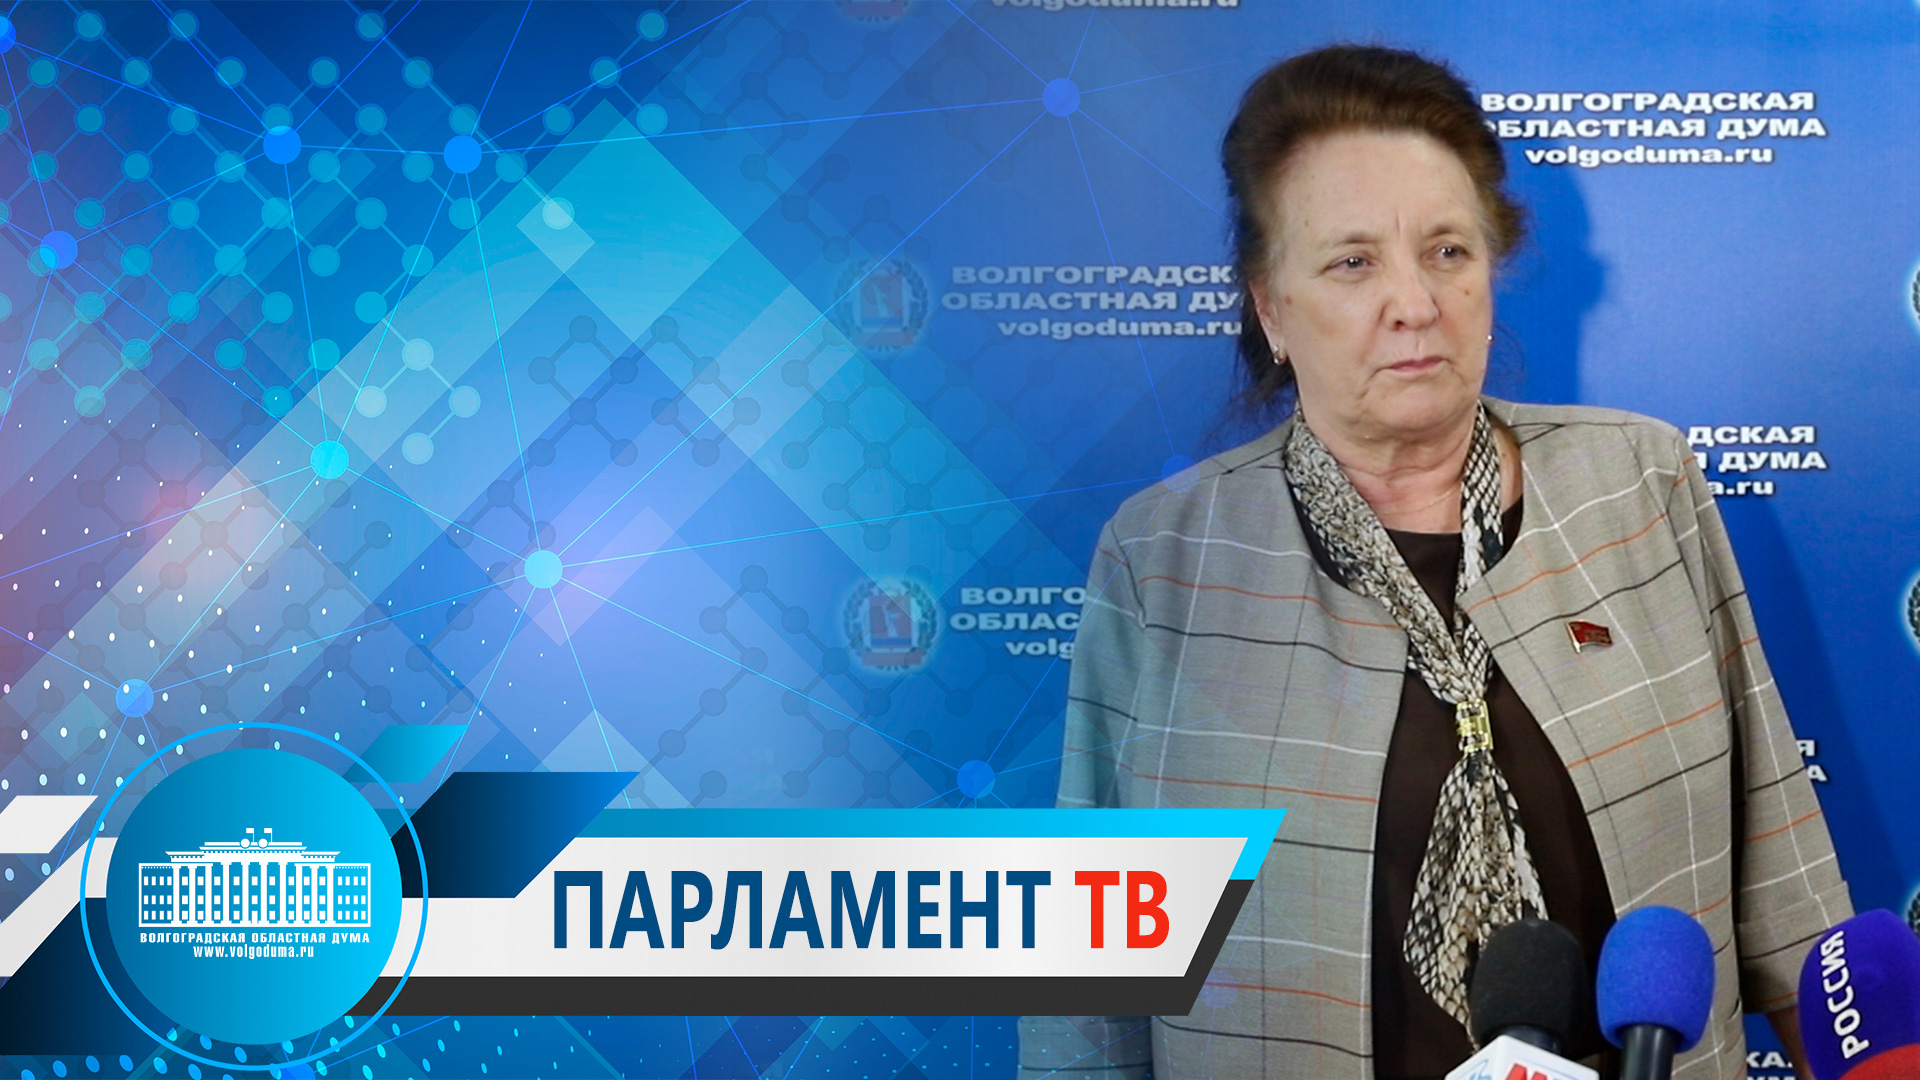 Т.Головачева:"Необходим  взвешенный подход к формированию бюджета с учетом вызовов времени"